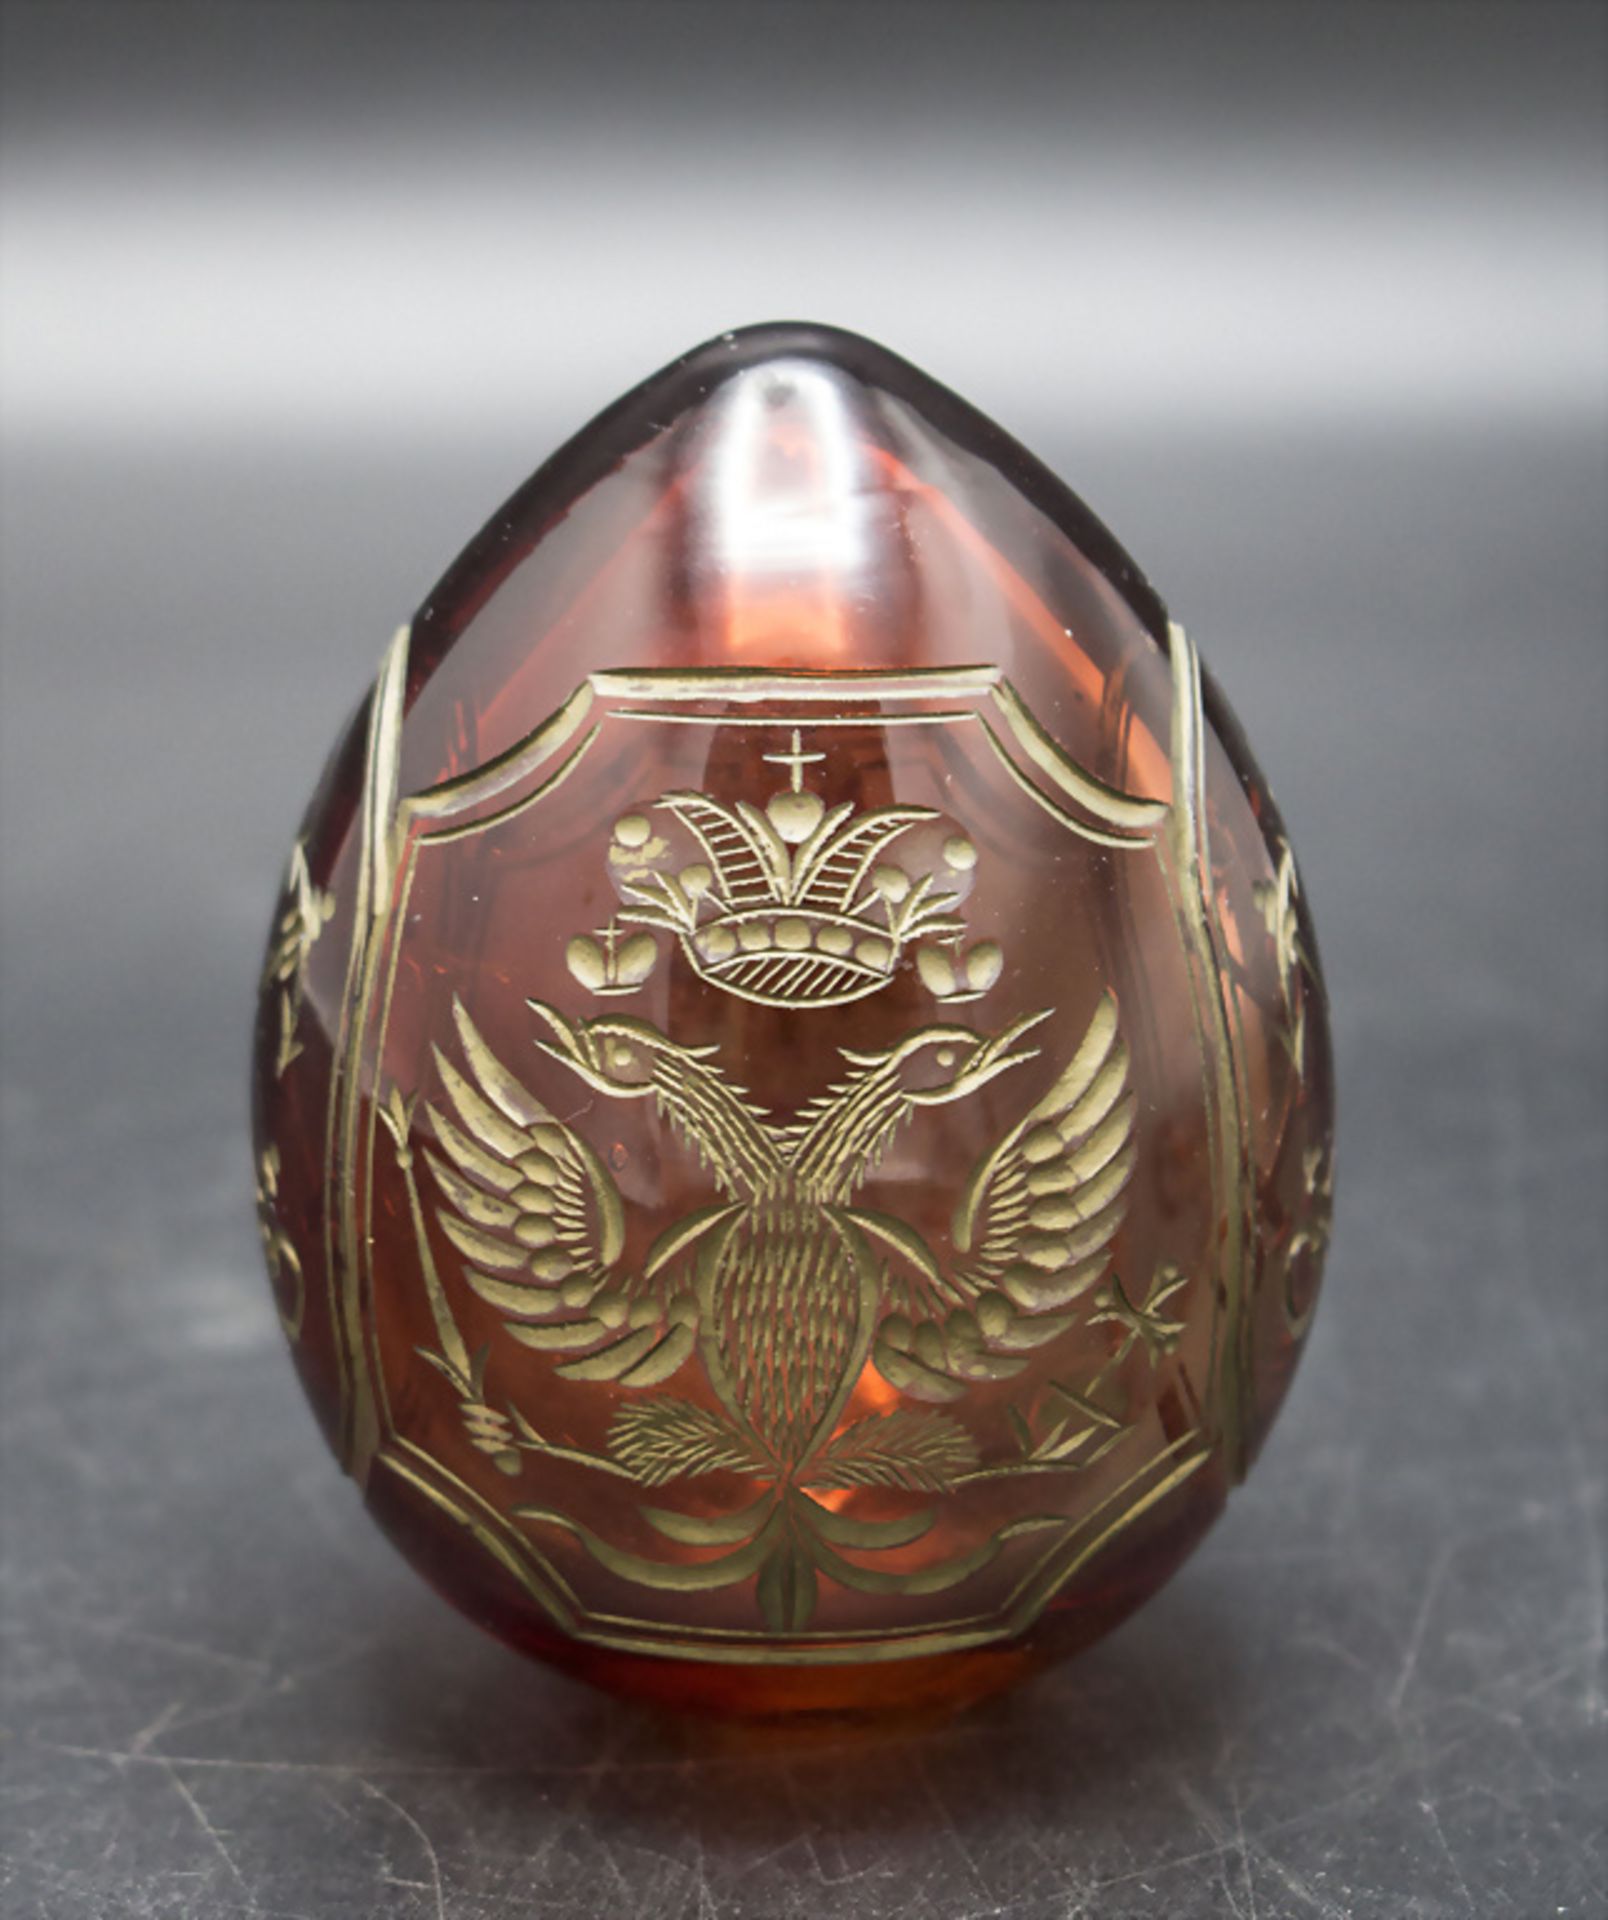 Glasei / Osterei / A glass egg, Russland, 19. Jh.